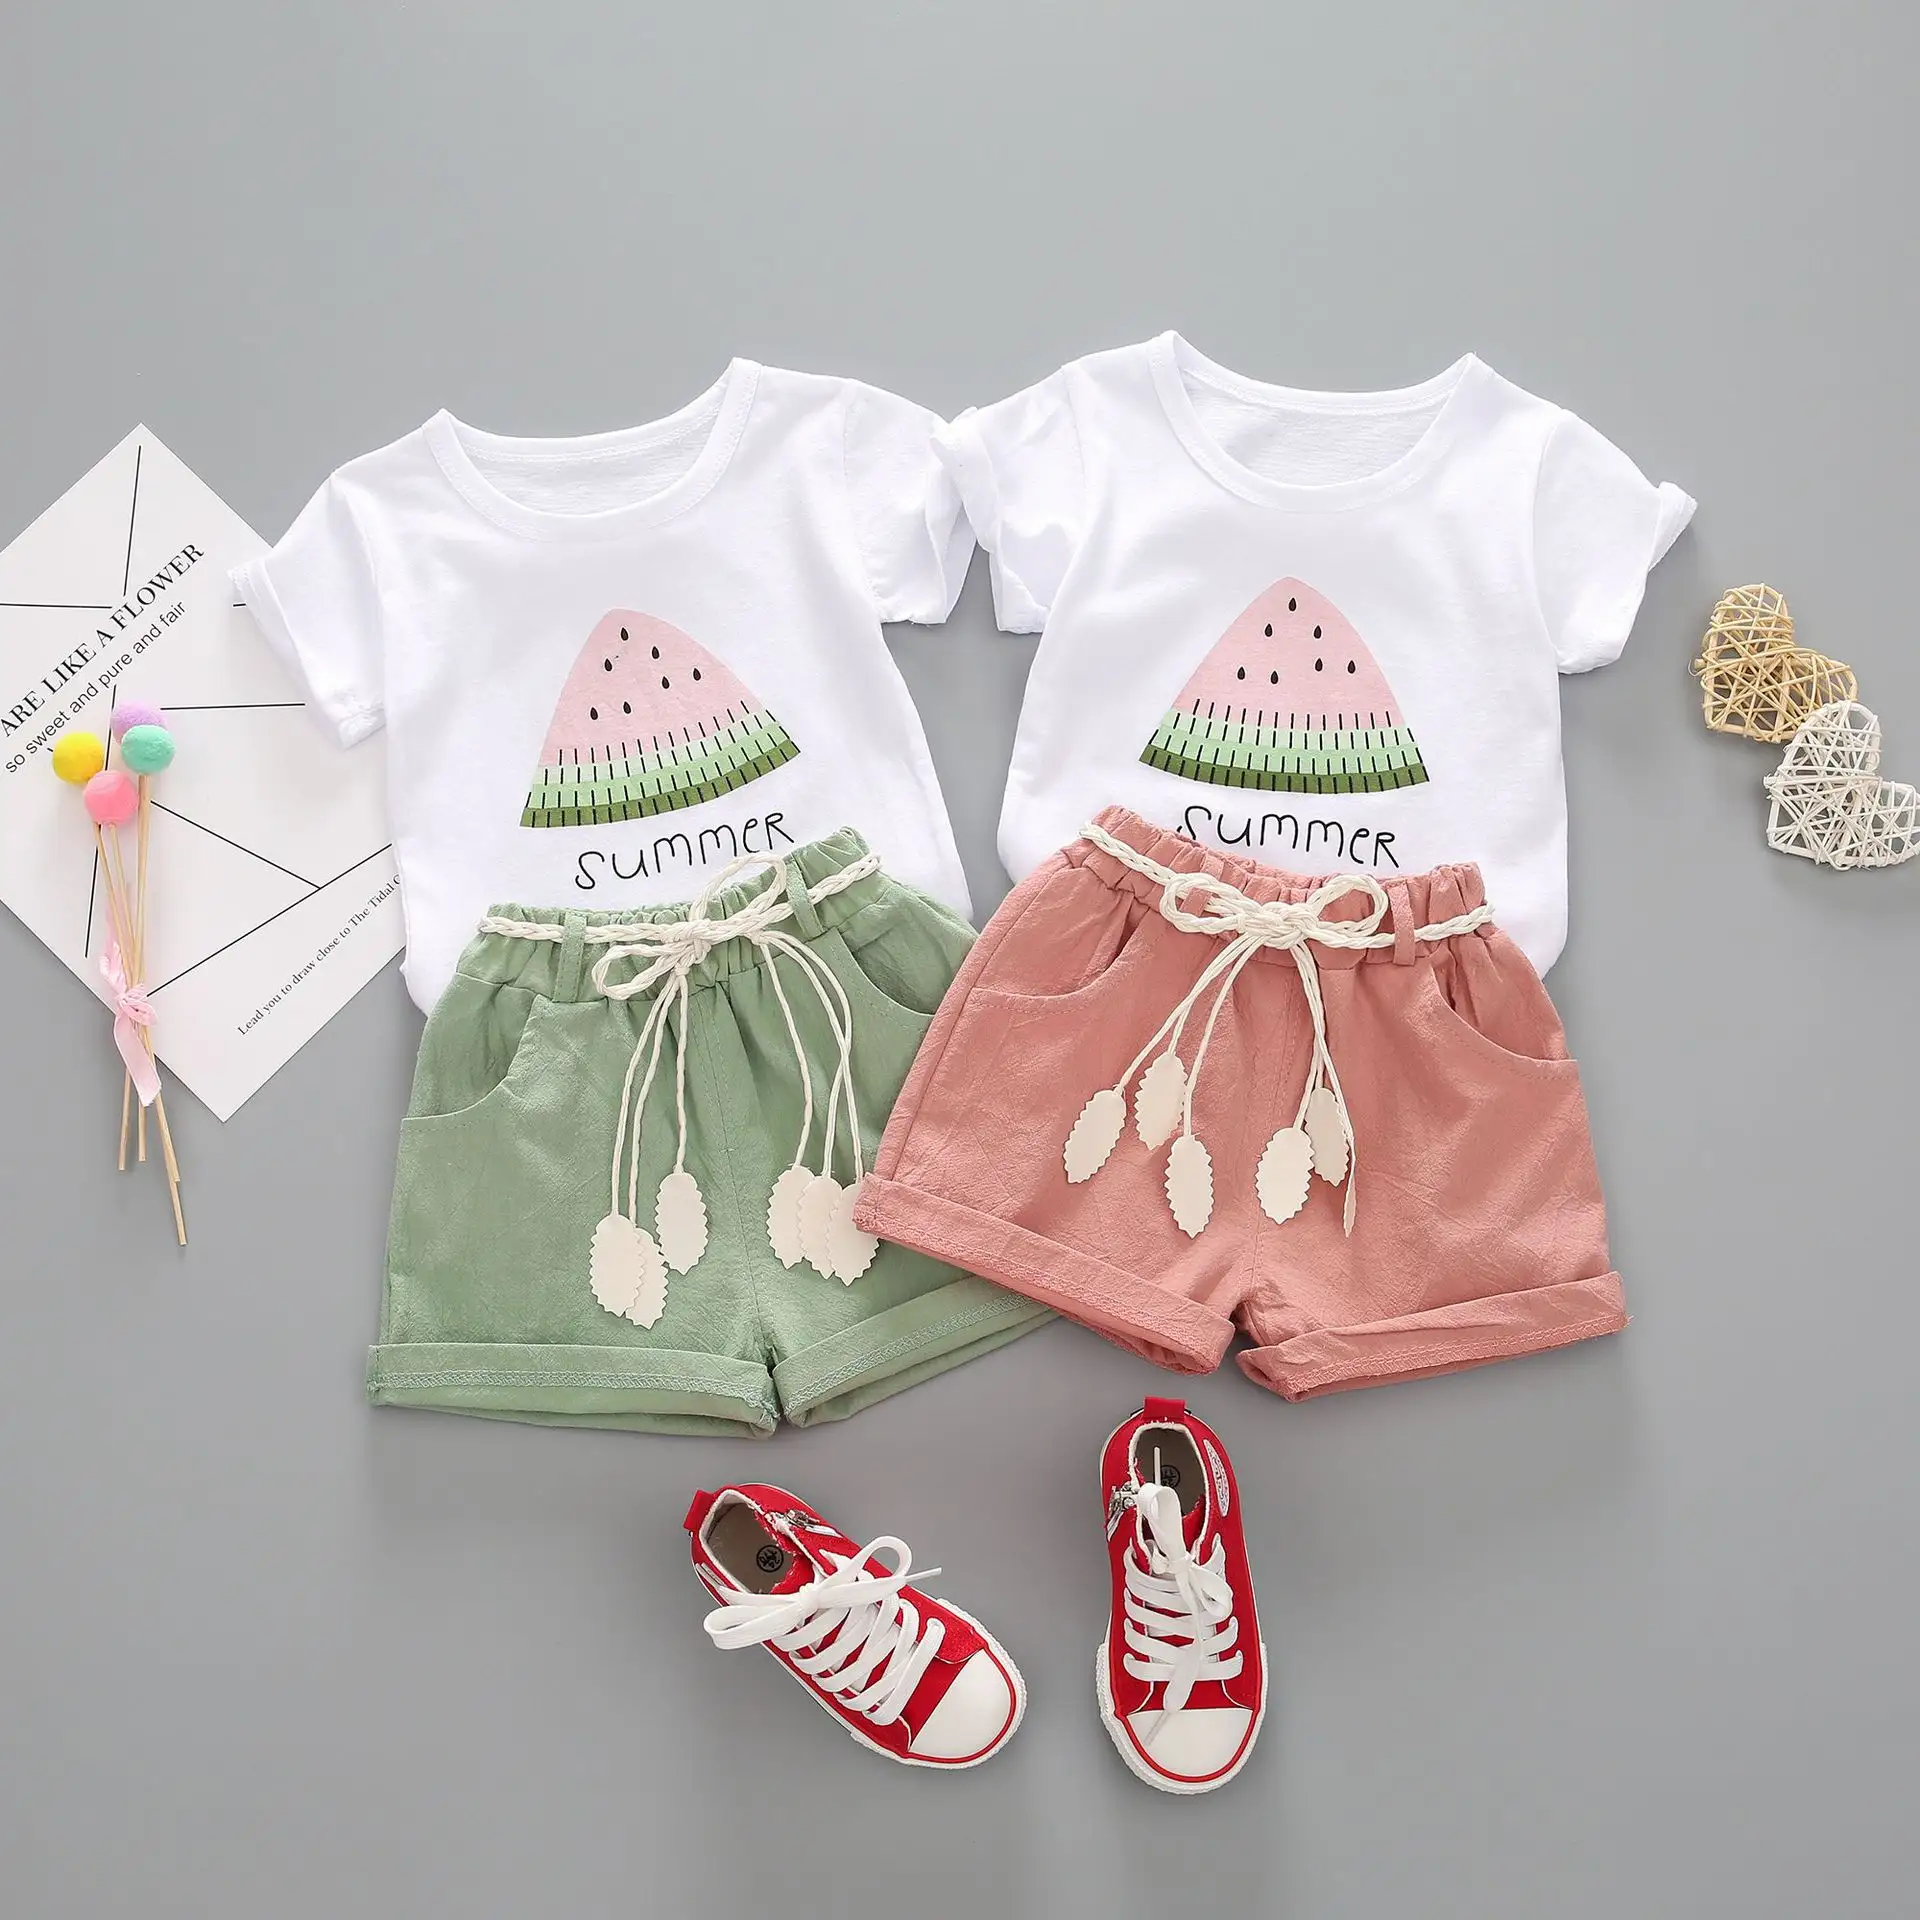 ירוק אופק ילדי הילדה של קיץ בוטיק בגדי סטים חמוד קריקטורה אבטיח הדפסת ילדי בנות סטי בגדים